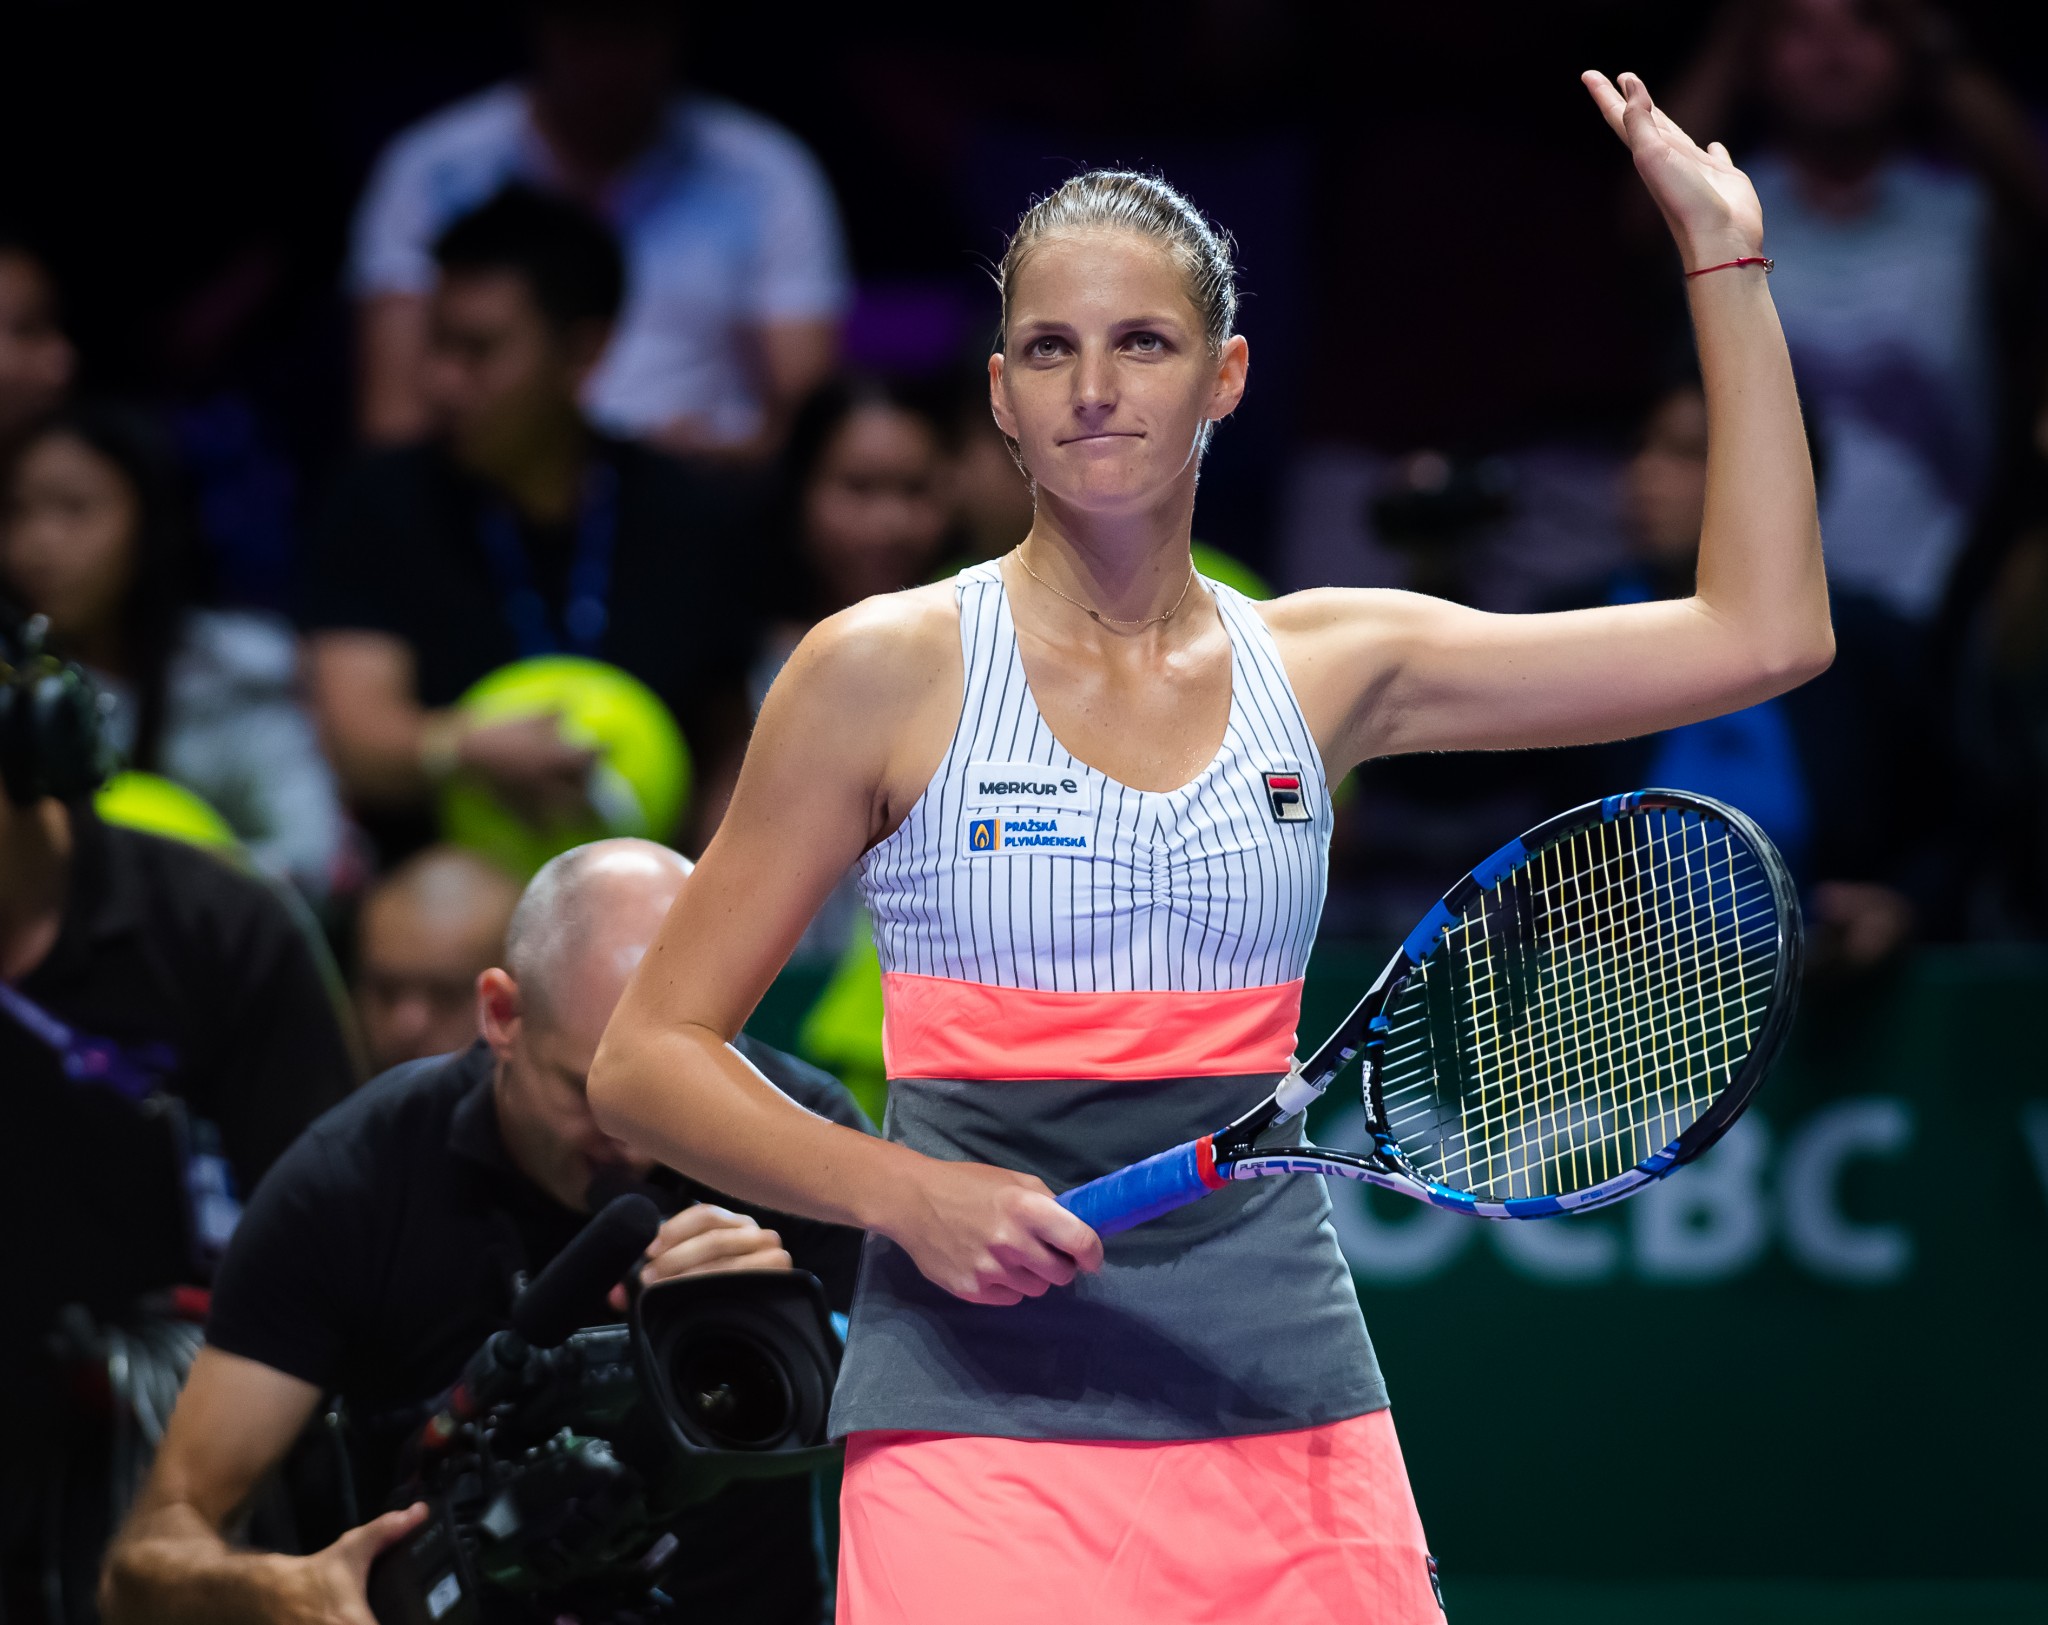 Plíšková Beats Muguruza to Reach Semifinals in Singapore - Karolína Plíšková